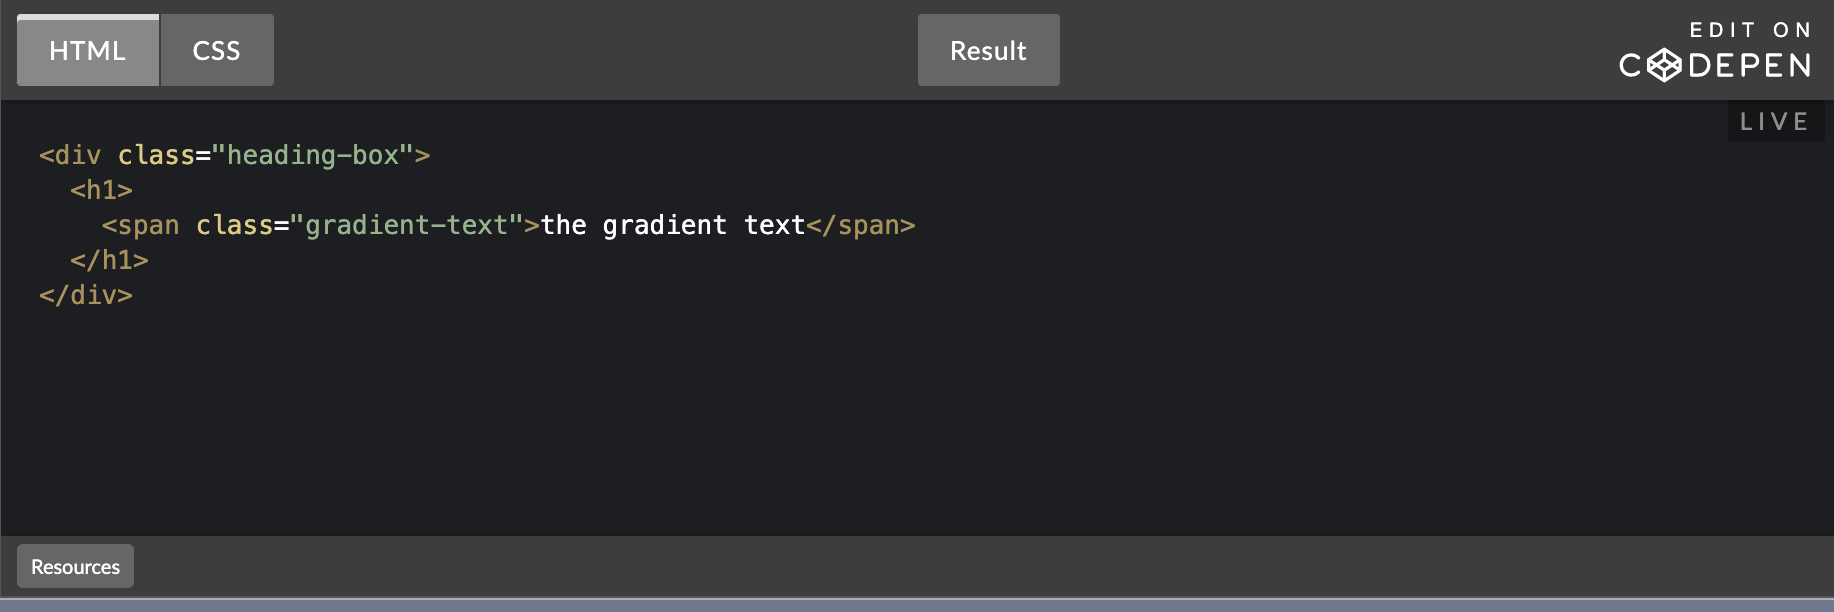 CodePenの設定項目「Default Tabs」で「HTML」のみを選択した場合の表示例